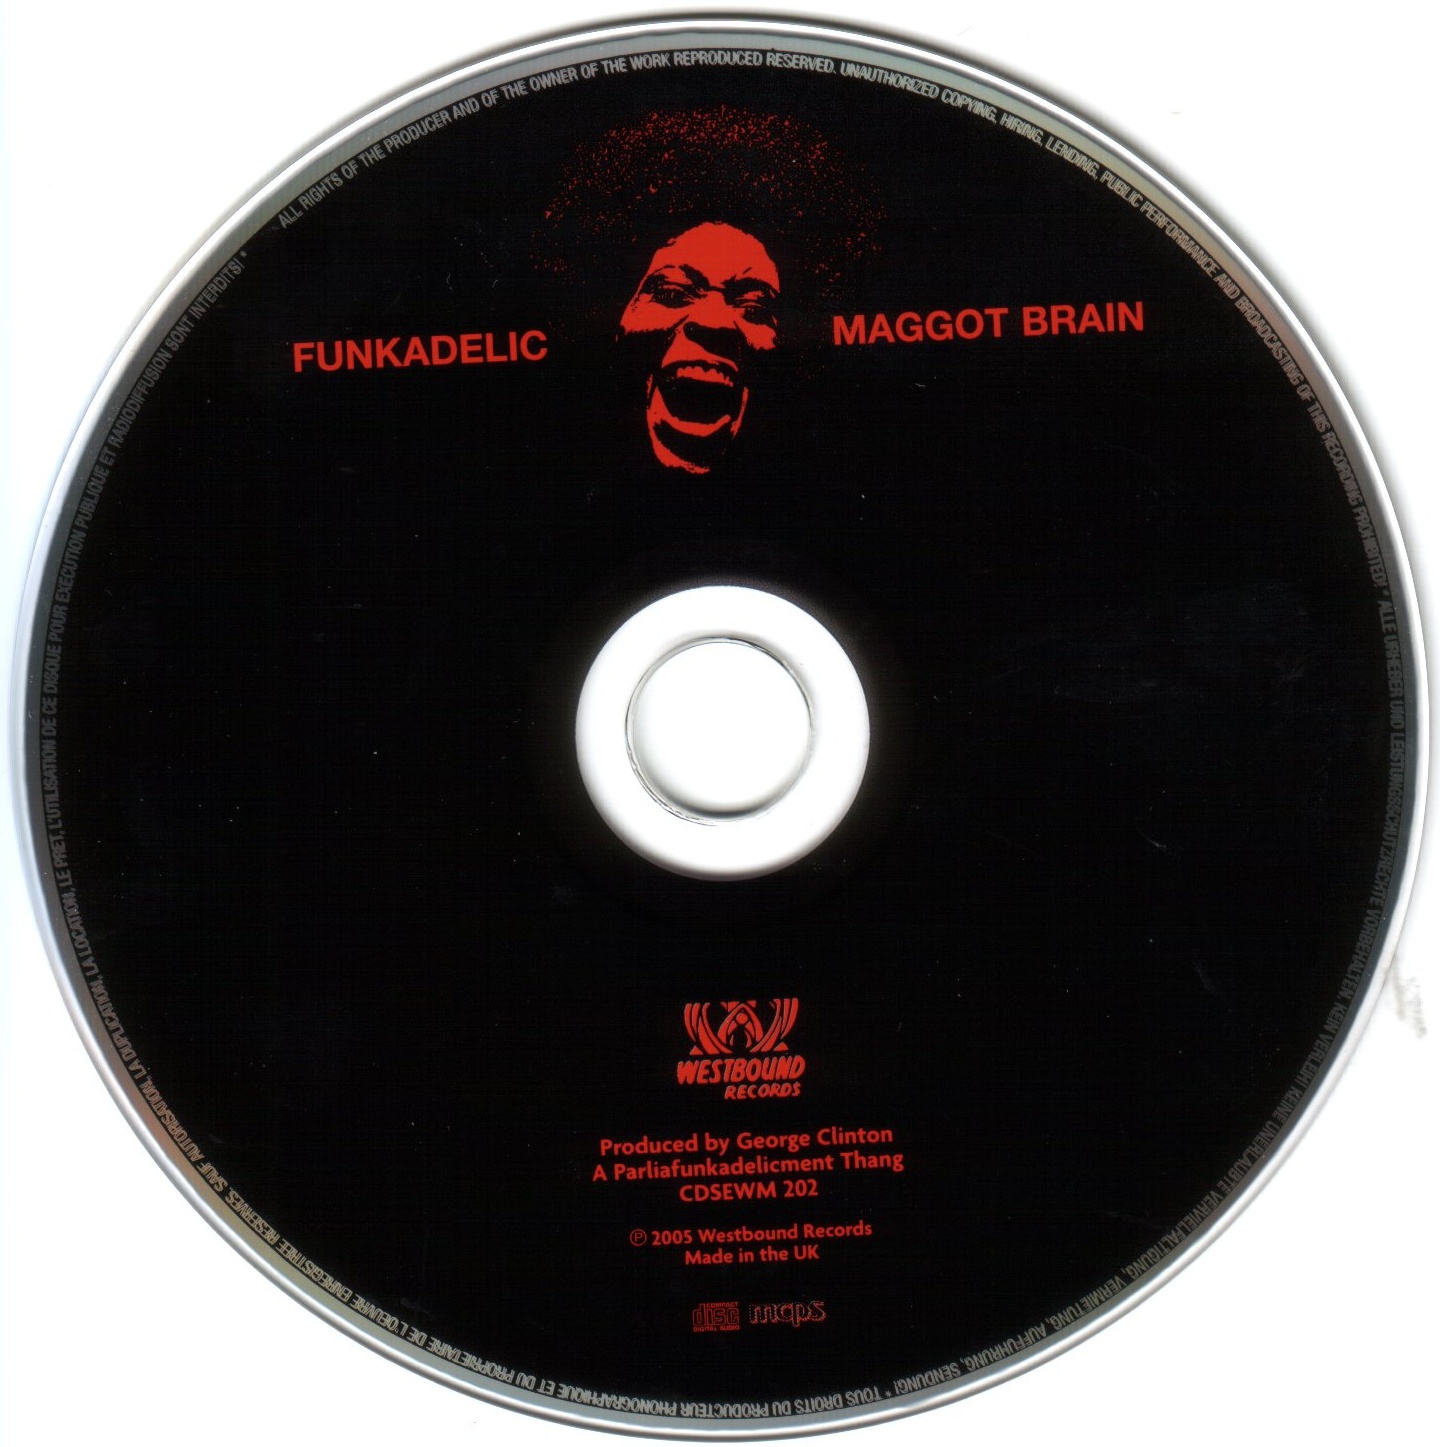 Maggot brain. Фанкаделик, ‘Maggot Brain’ (1971). Funkadelic Maggot Brain. Funkadelic Maggot Brain винил.